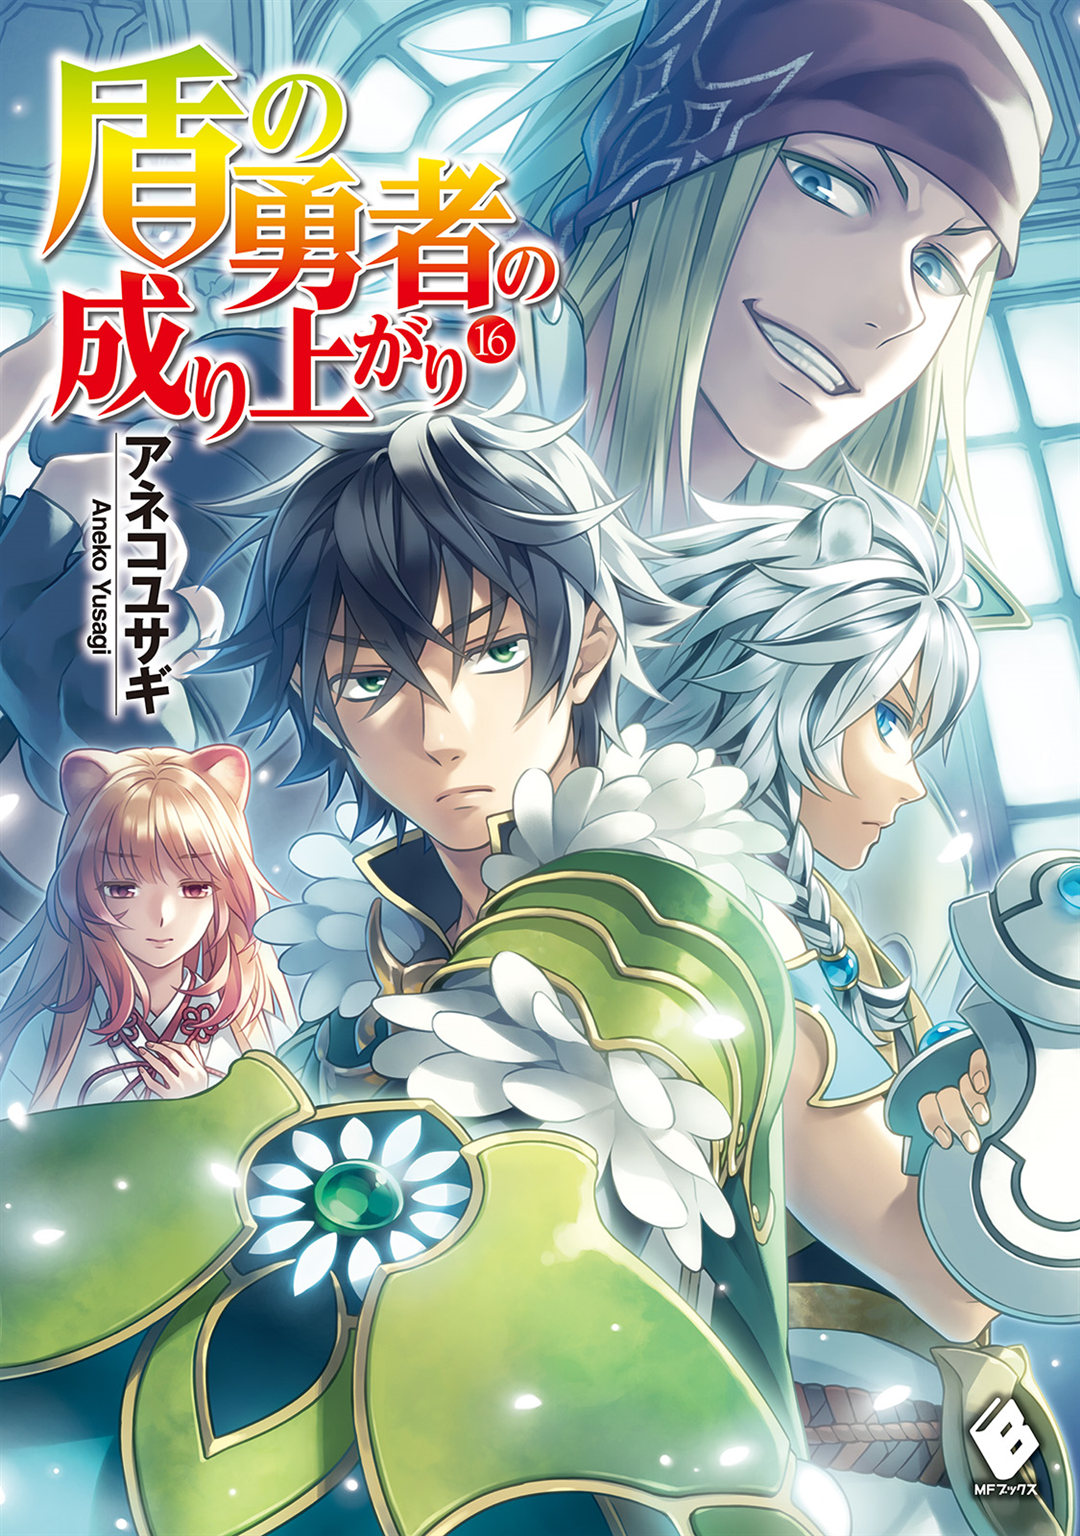 tate no yuusha manga updates novel